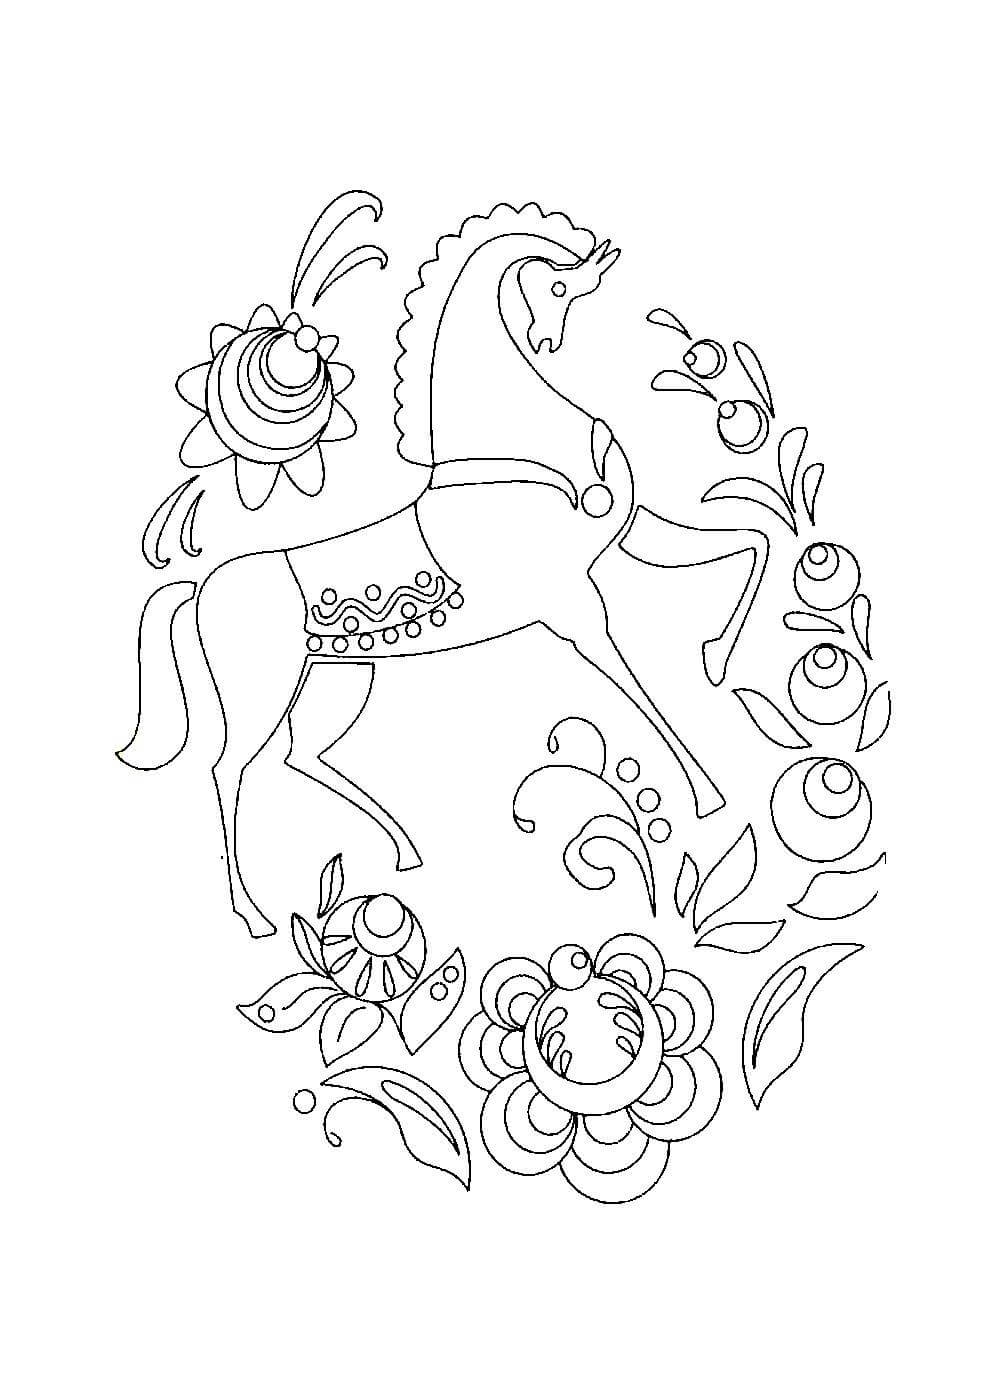 Городецкая лошадка рисунок раскраска